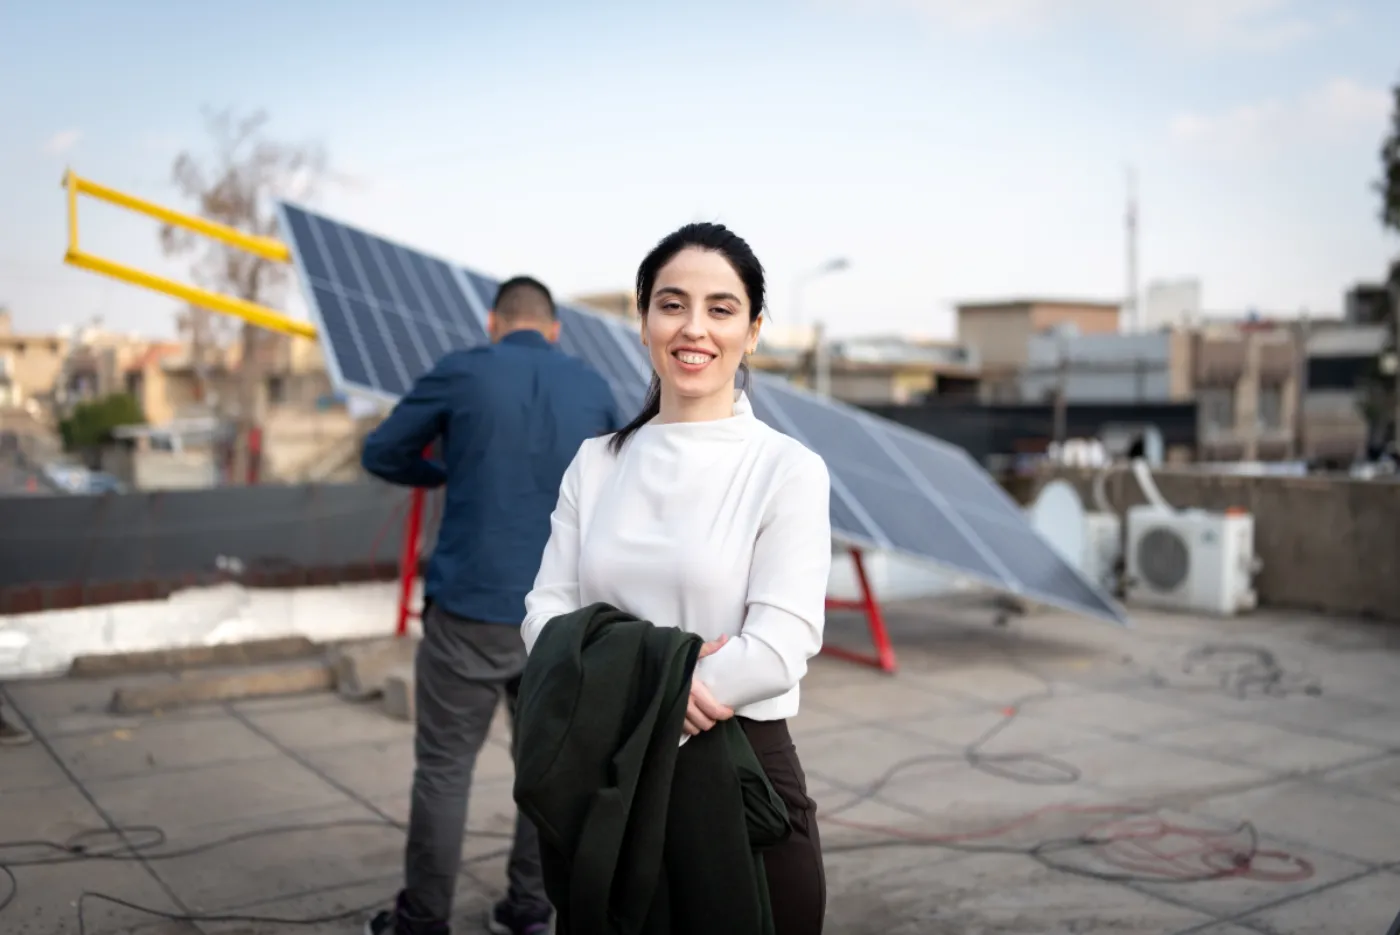 Meet the Women Pioneers Creating Green Jobs in Arab Countries